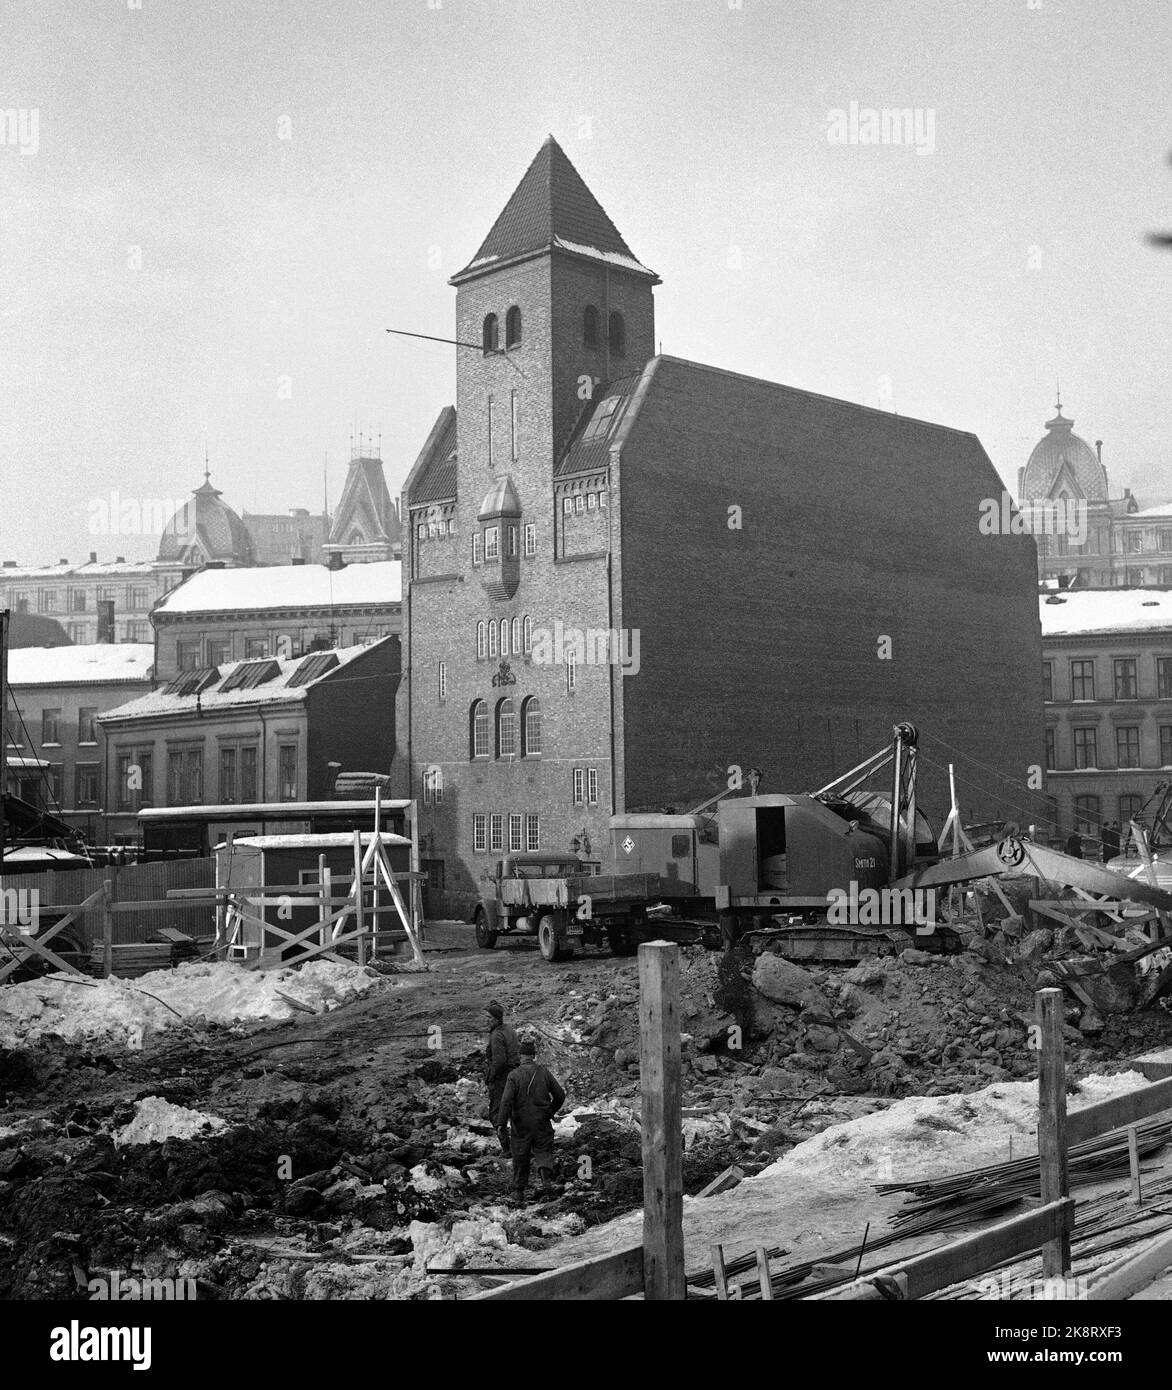 Oslo 19590205 Pipervika Kirche fotografiert ein paar Tage, bevor es abgerissen werden sollte. Die gesamte Umgebung ist bereits in Schotter verlegt. Im Hintergrund konnte man einen Blick auf die Victoria-Terrasse werfen. Foto: NTB / NTB Stockfoto